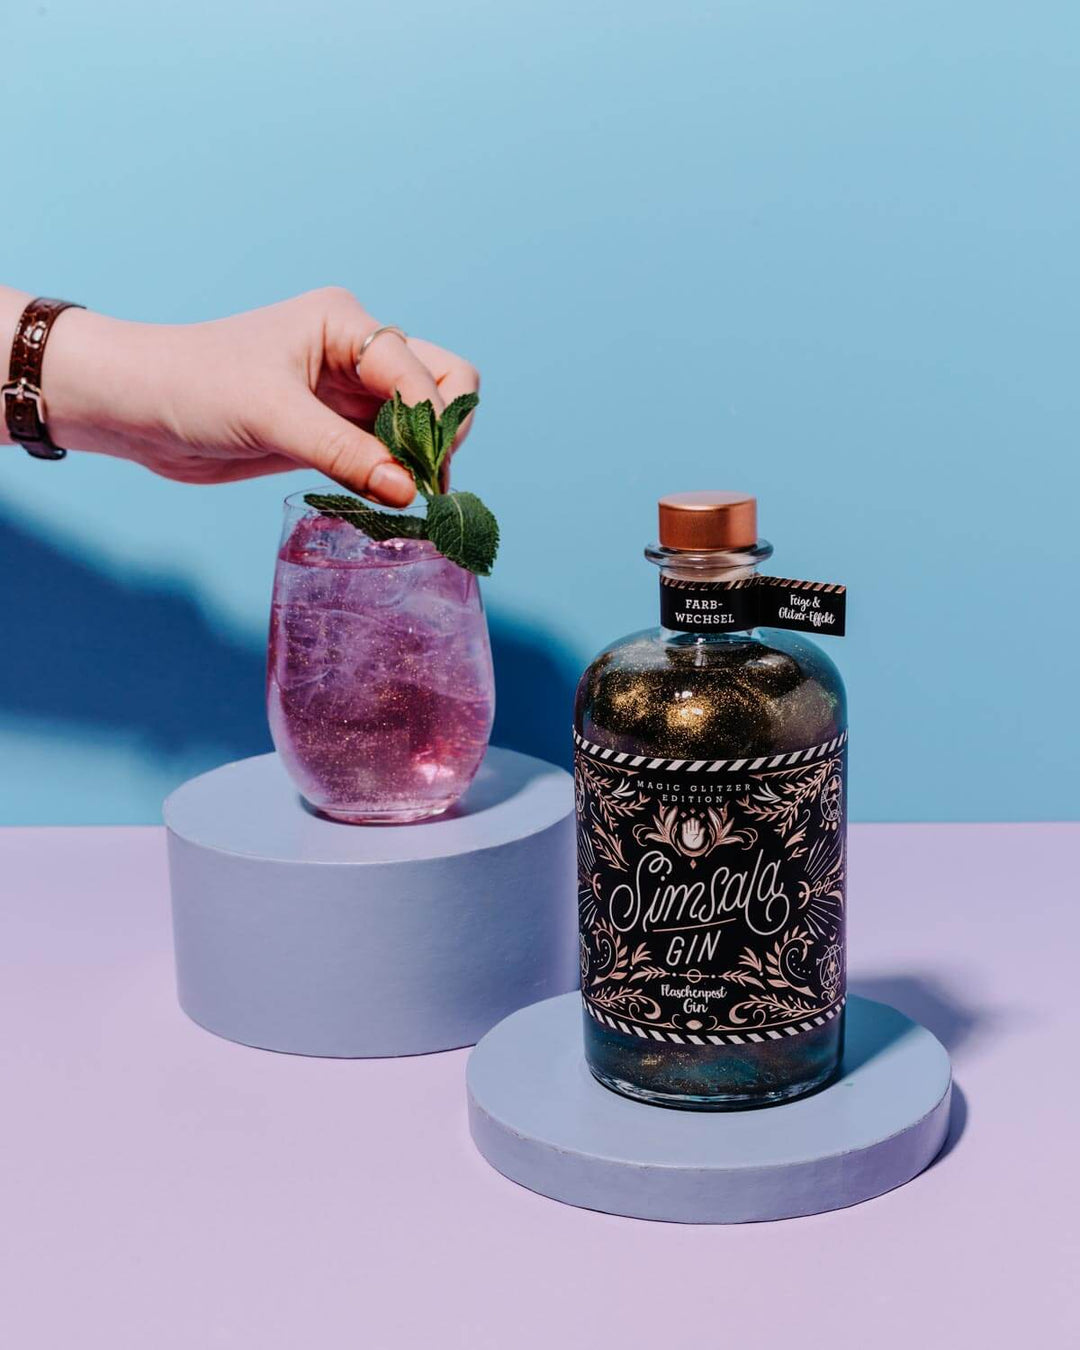  Simsala Gin Glitzer ist ein einzigartiger Zauber-Gin, der durch sein Glitzern und die Veränderung seiner Farbe in Kombination mit Tonic Water zu einem magischen Trinkerlebnis wird.